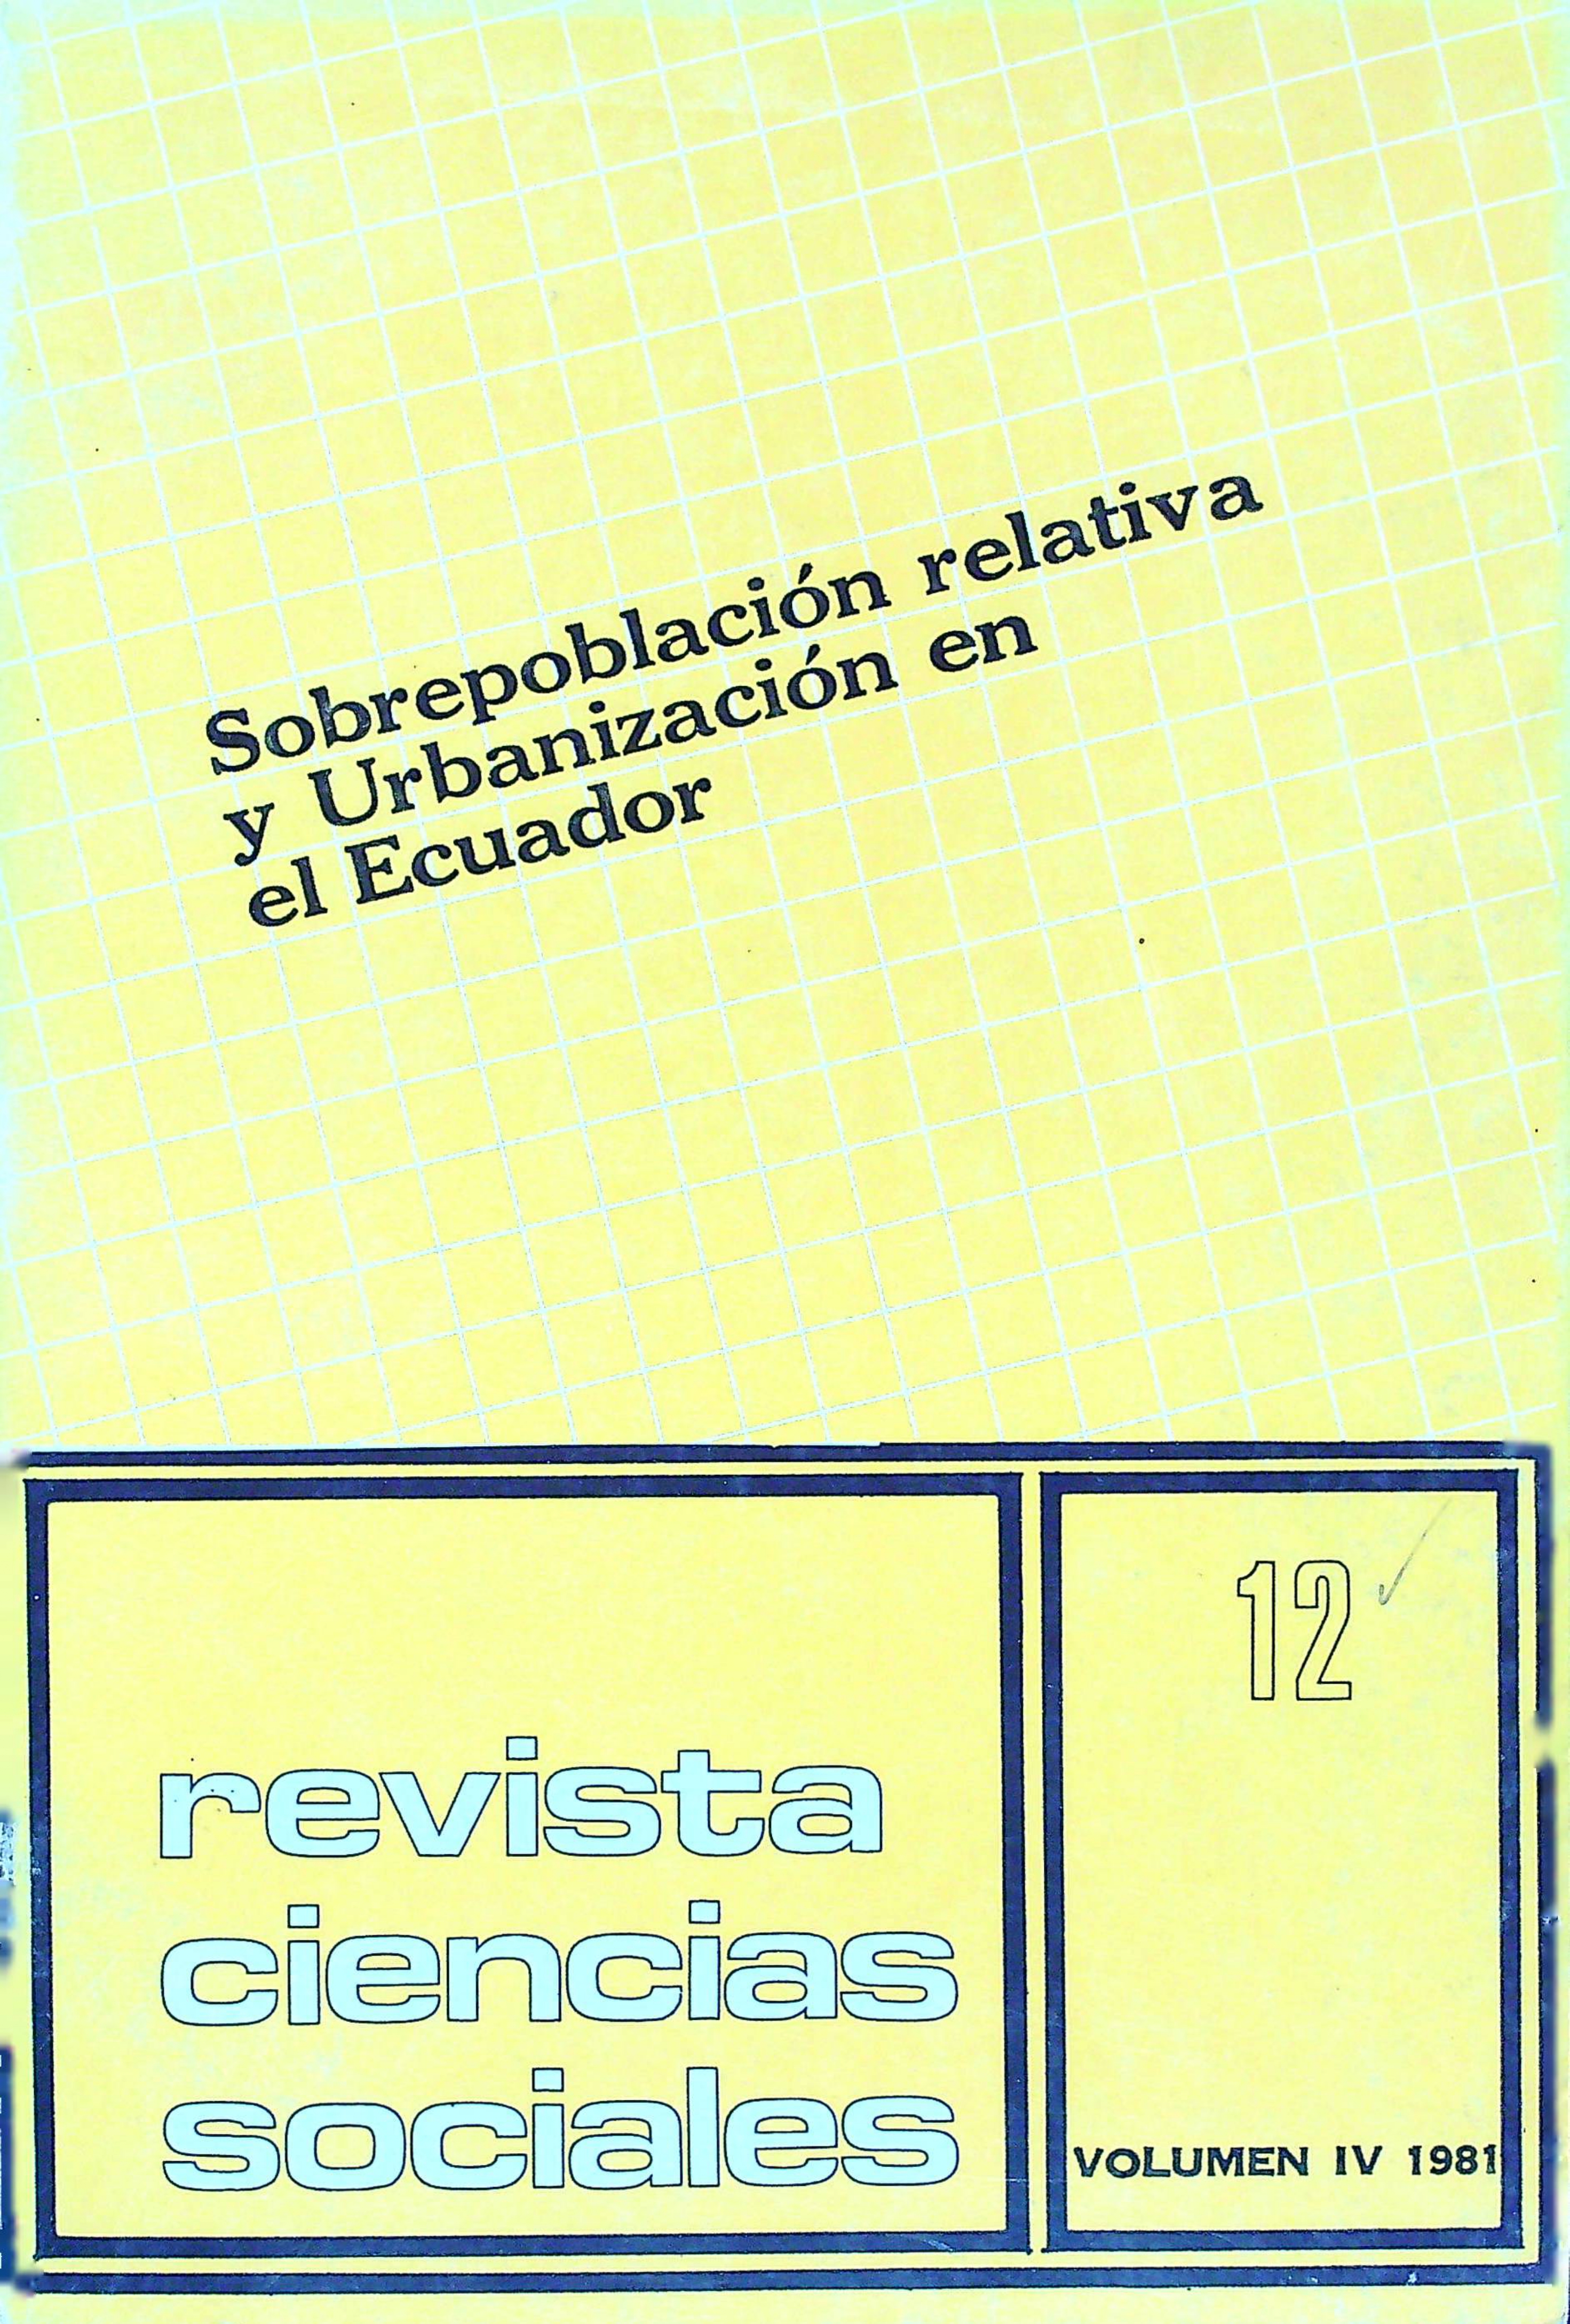 					Ver Vol. 4 Núm. 12 (1981): Sobrepoblación relativa y Urbanización en el Ecuador
				